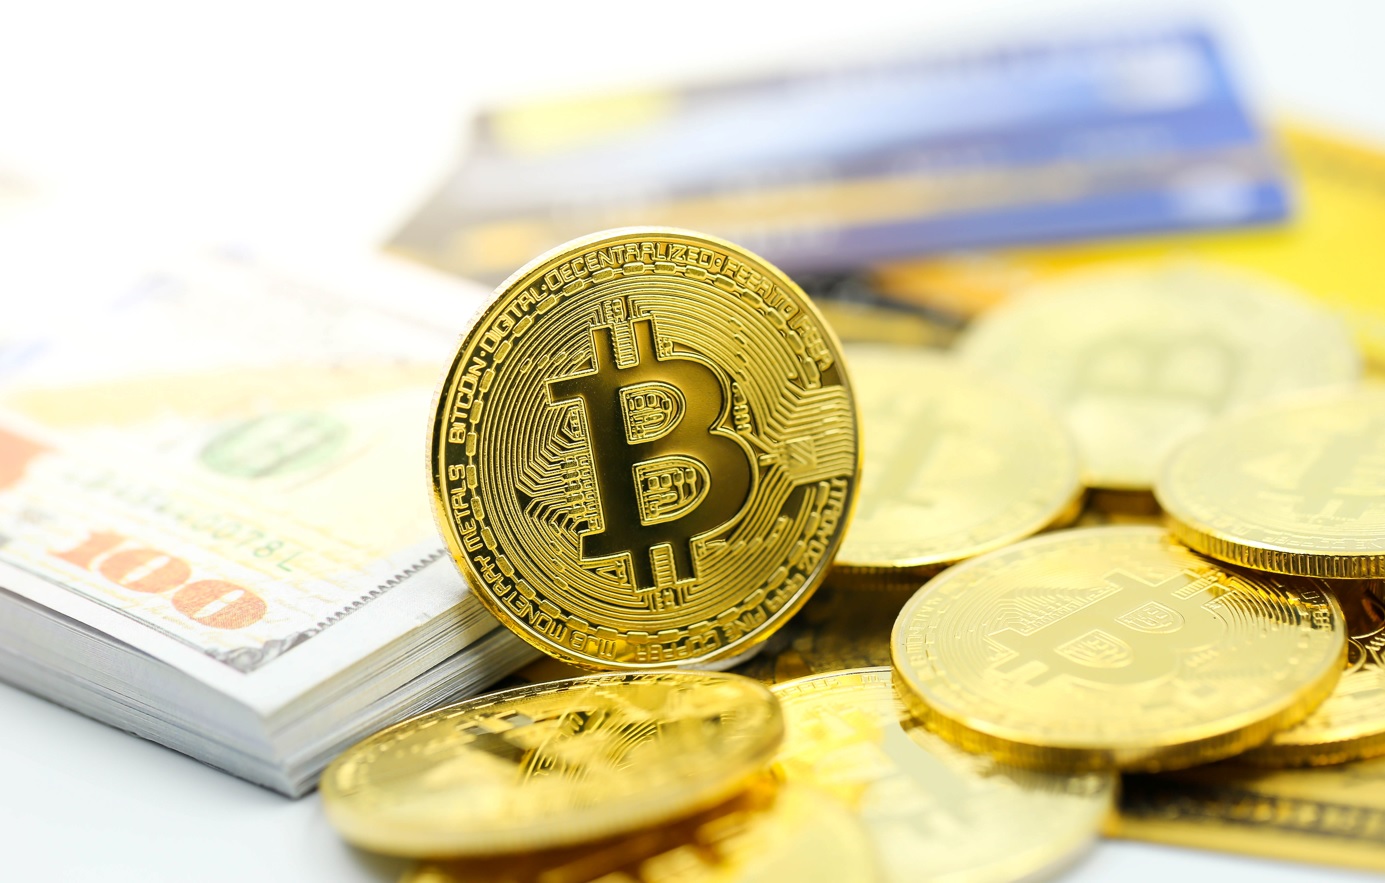  bitcoin continues pose risks major falls below 